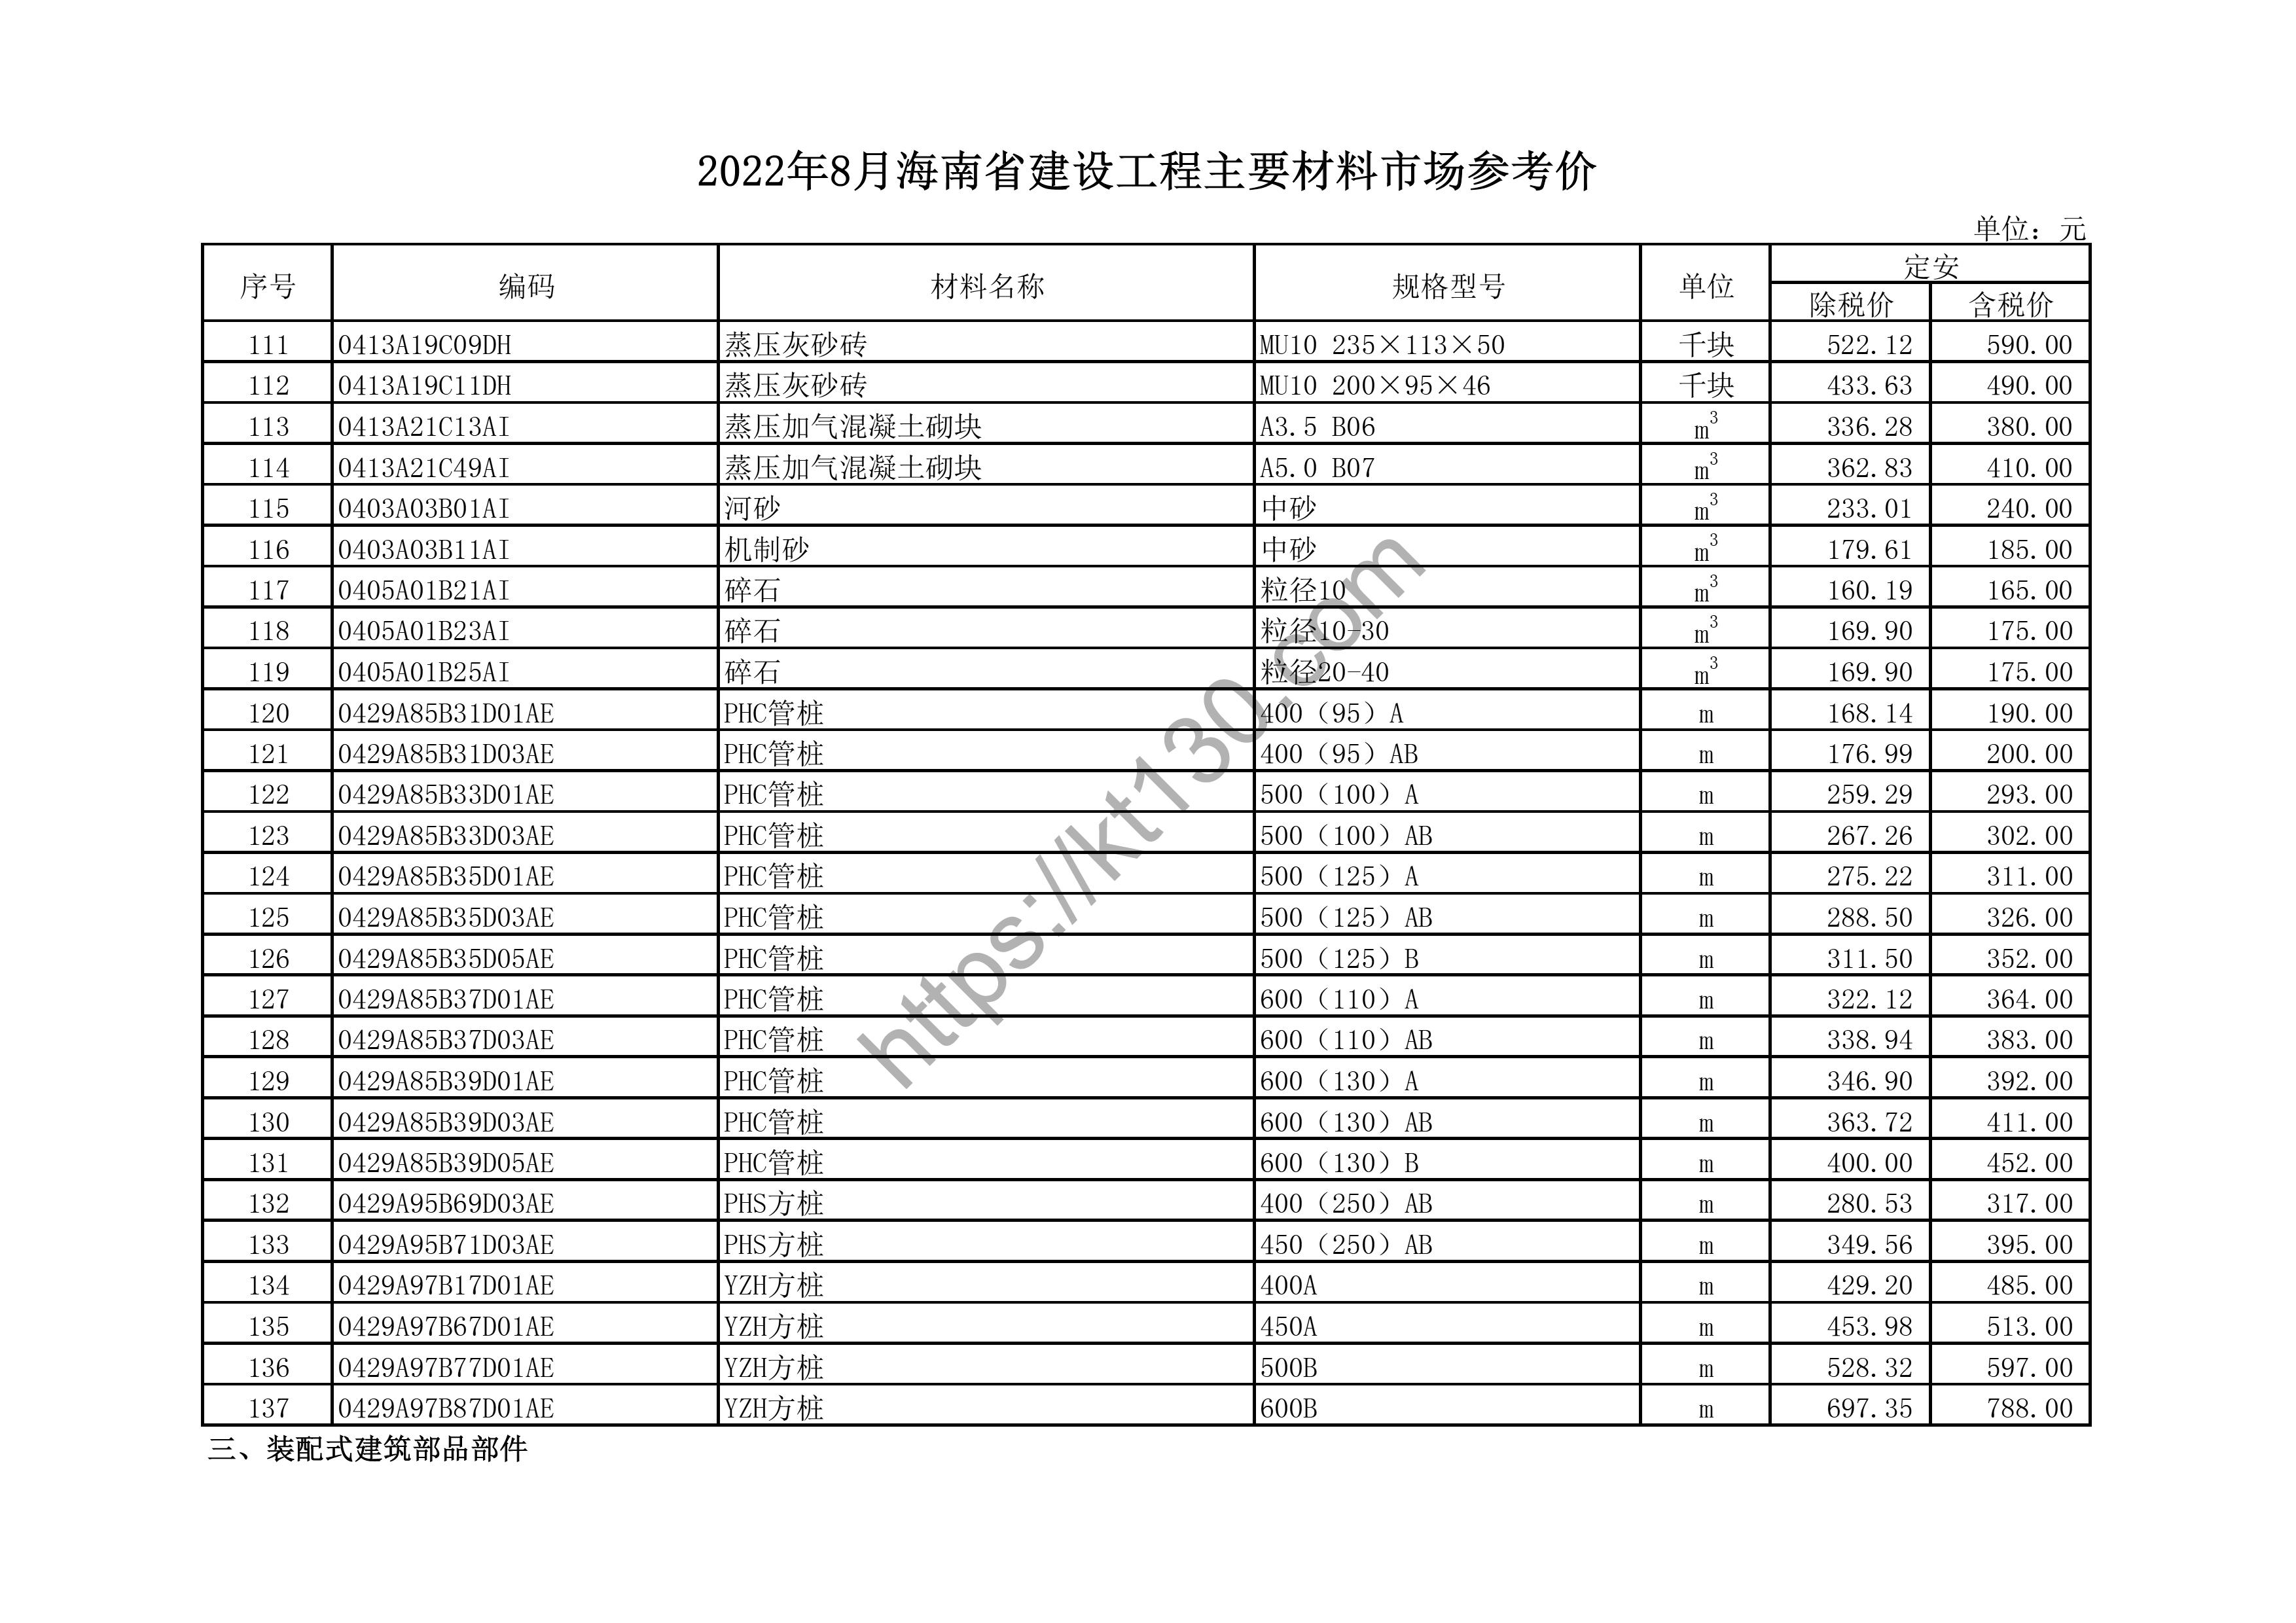 海南省2022年8月建筑材料价_排水管A管_44635